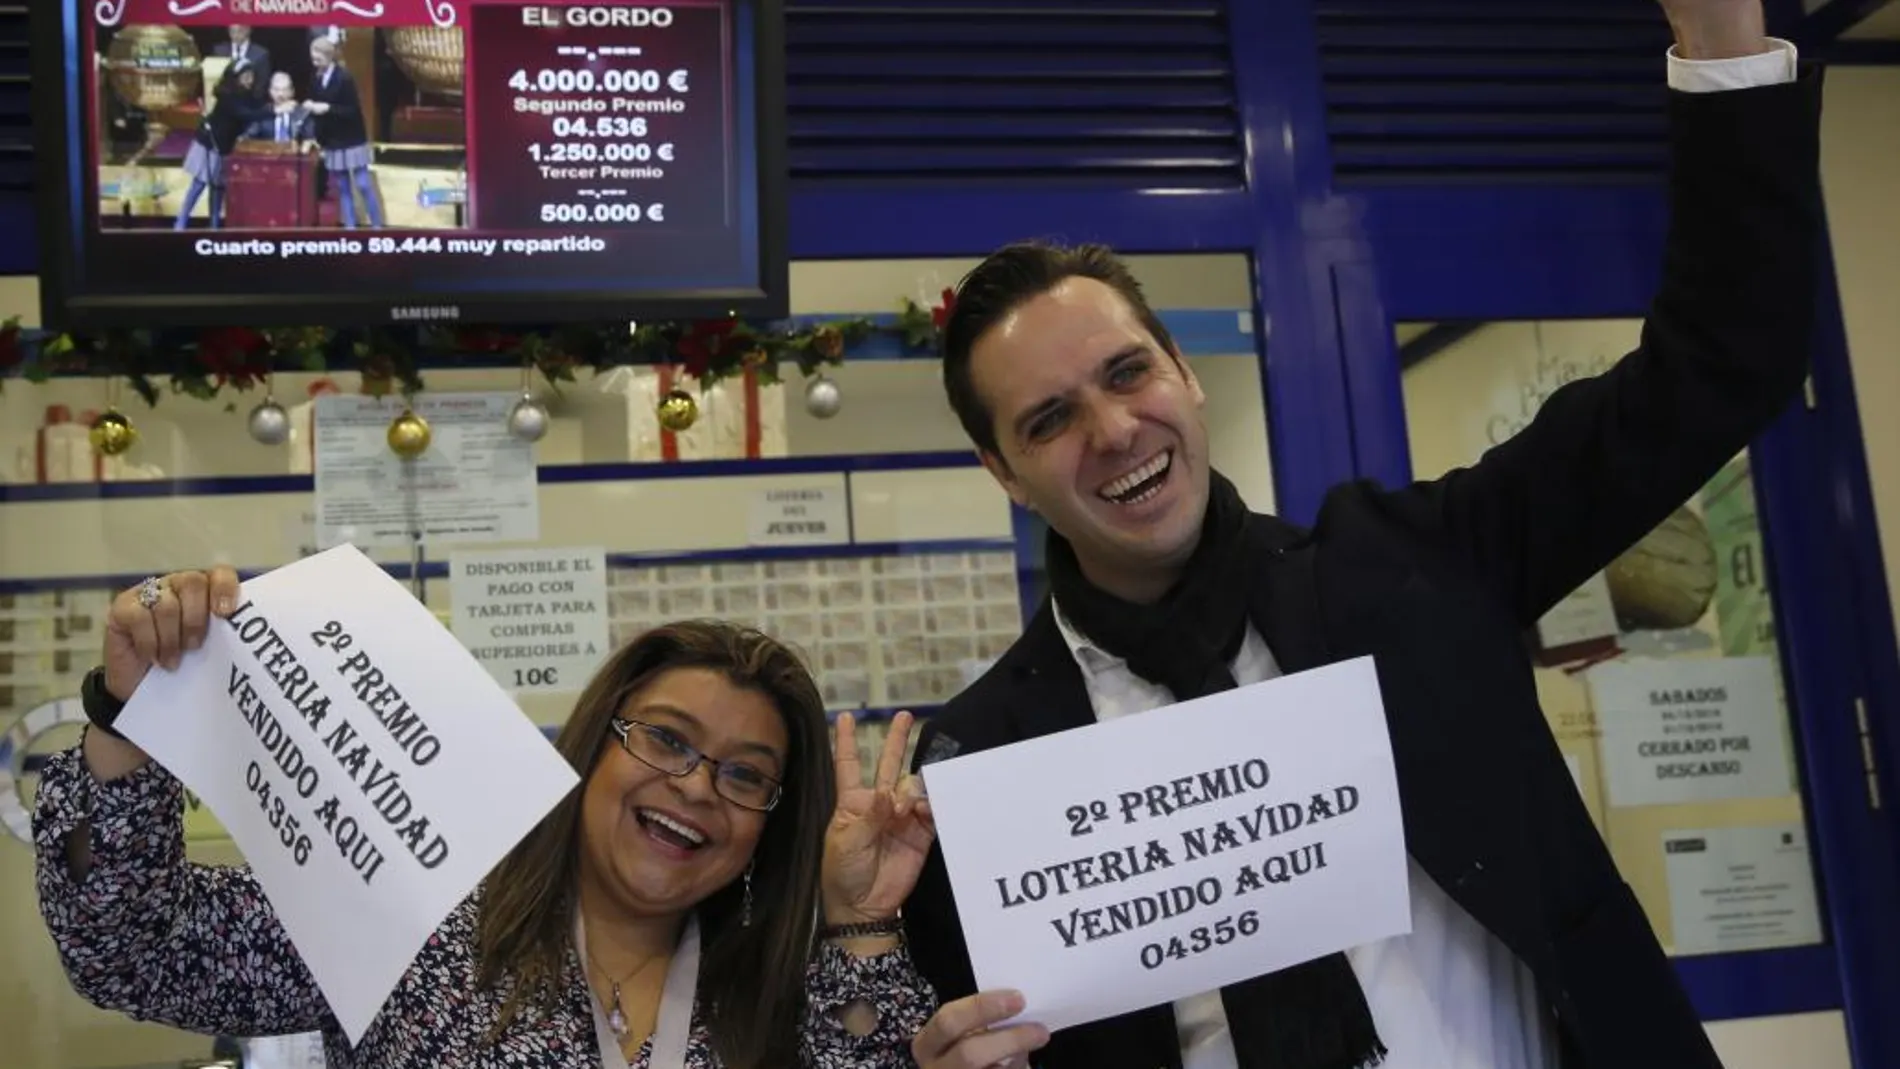 Marcos Delgado, dueño de la administración de lotería ubicada en la calle Condesa de Venadito en Madrid, acompañado de la vendedora Jenyffer Hoyos celebran su segundo premio